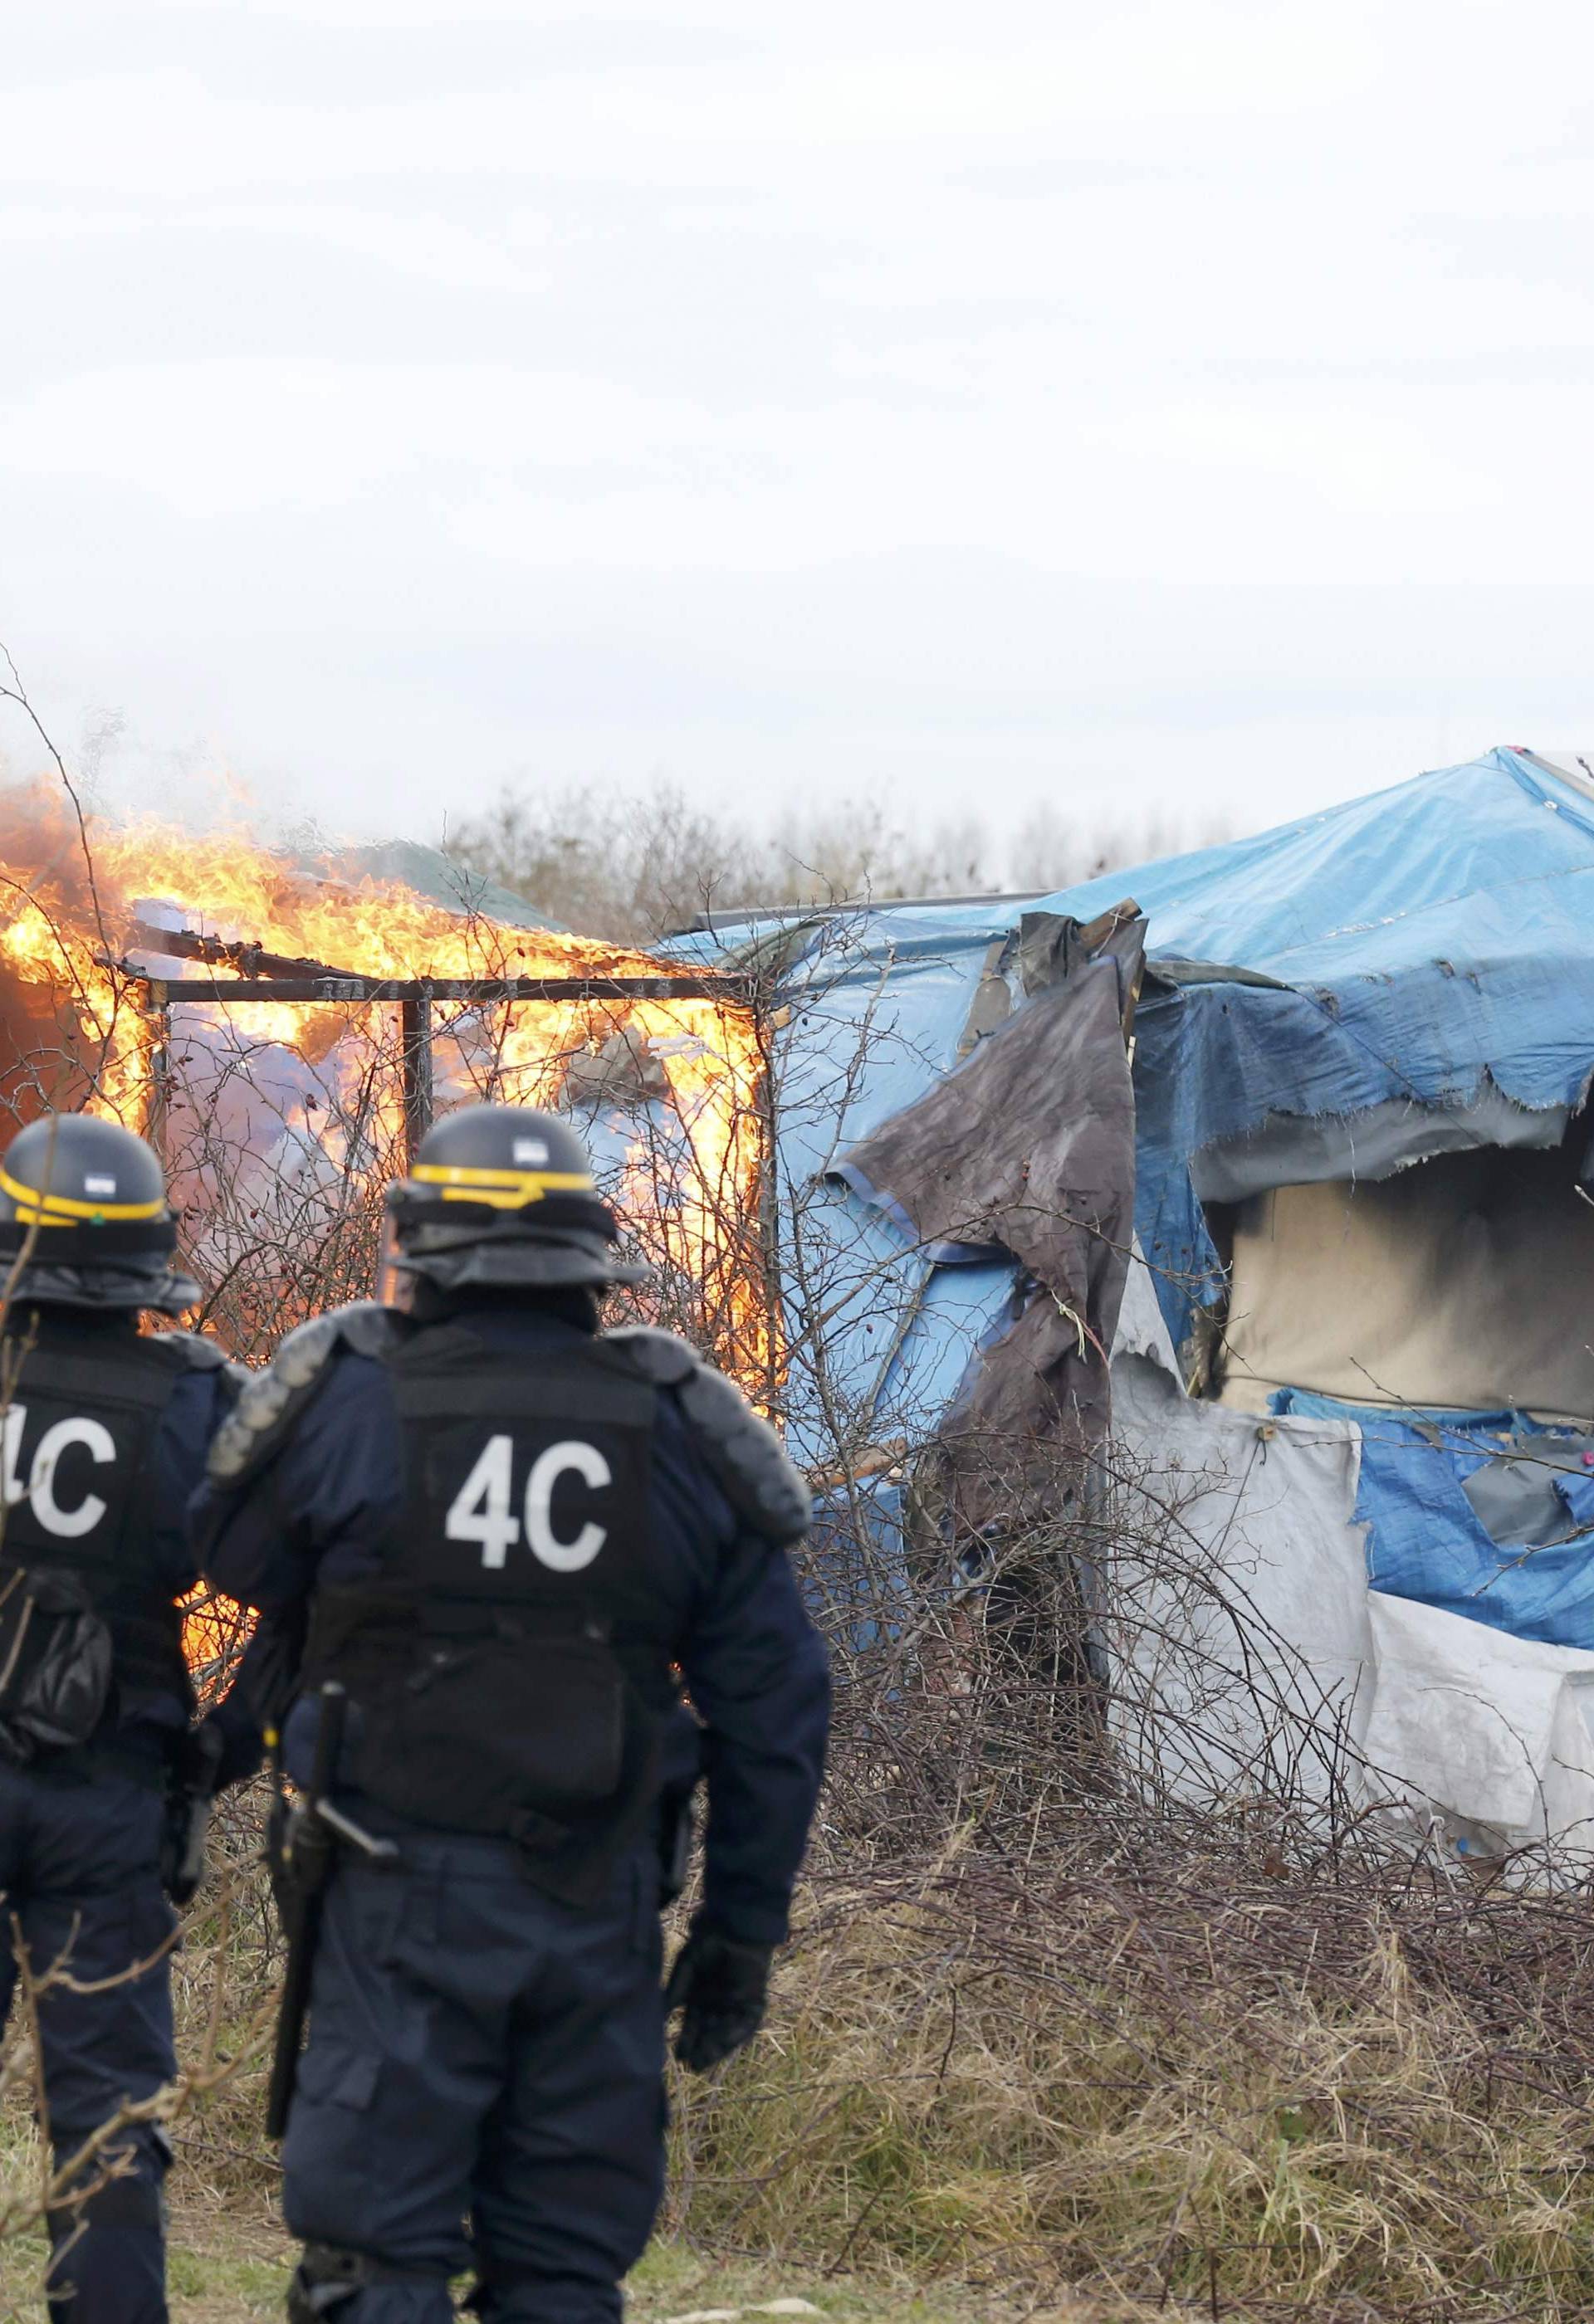 Kaotično u izbjegličkoj džungli: Kamp Calais nestaje u plamenu